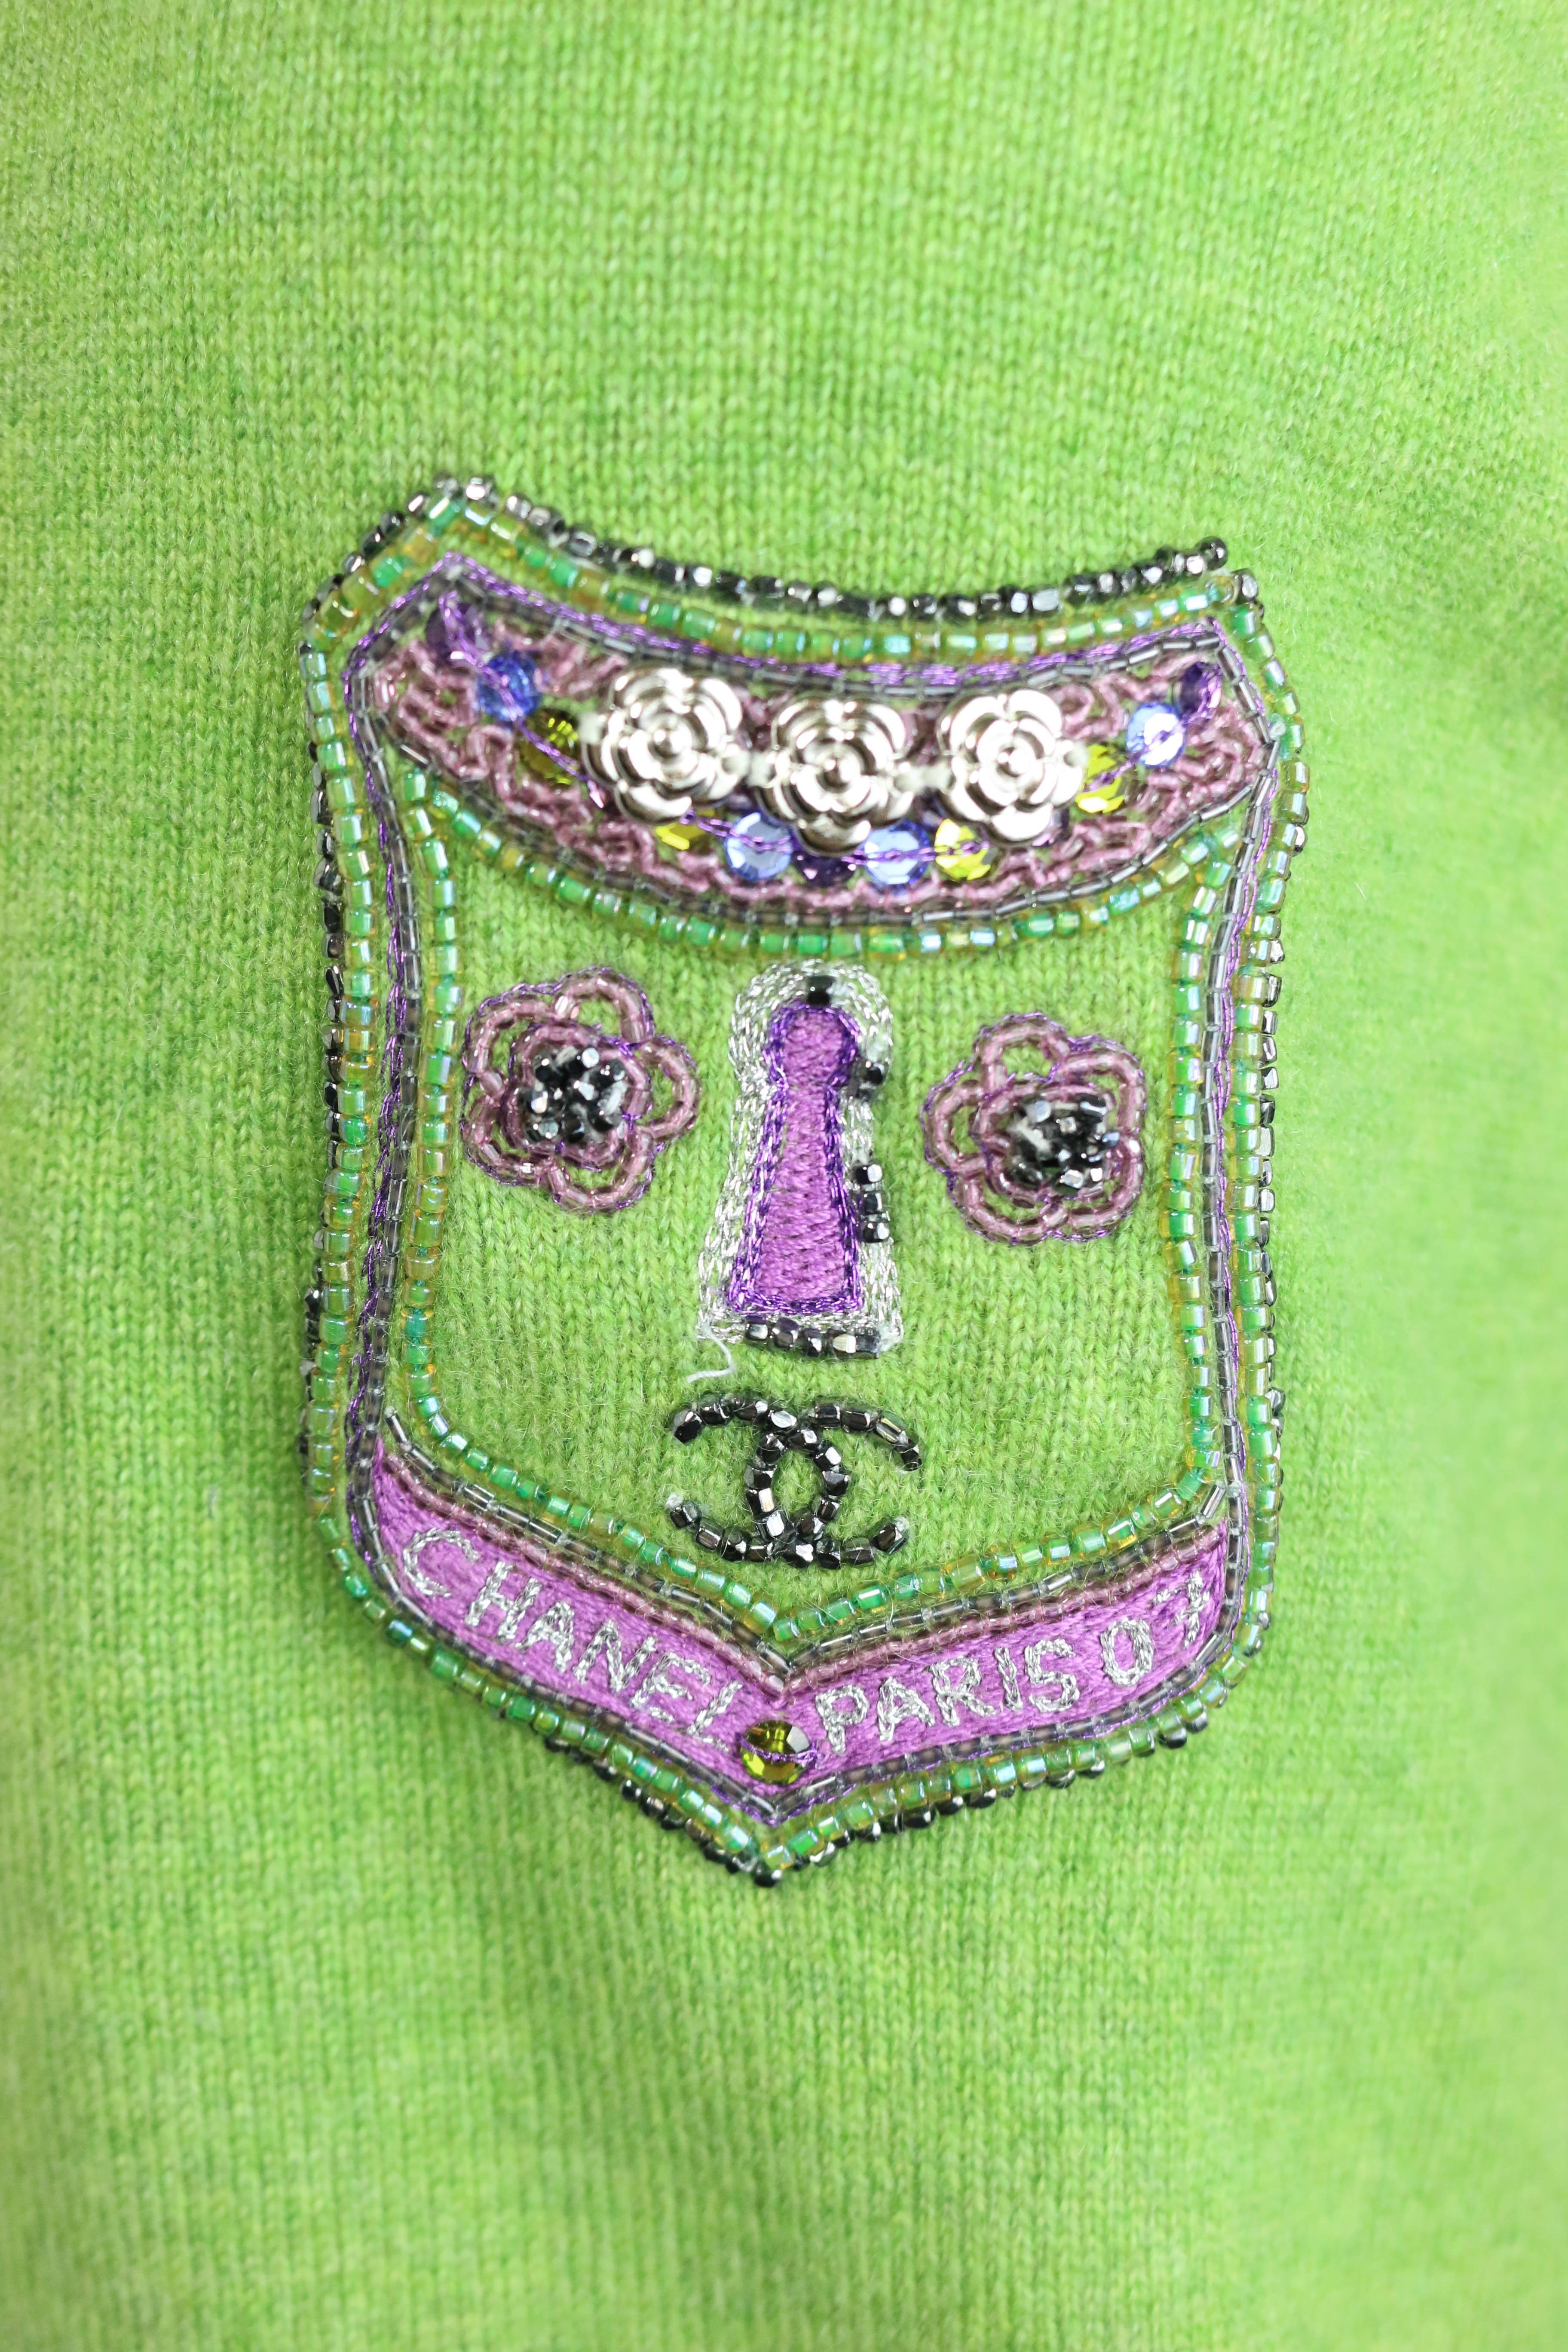 - Grüner und violetter Kaschmirpullover von Chanel aus der A/W-Kollektion 2007. Mit  ein Patch in einigen Unterschrift Chanel Kamelie Blumen Hardware, schöne Pailletten, gestickt, dass 